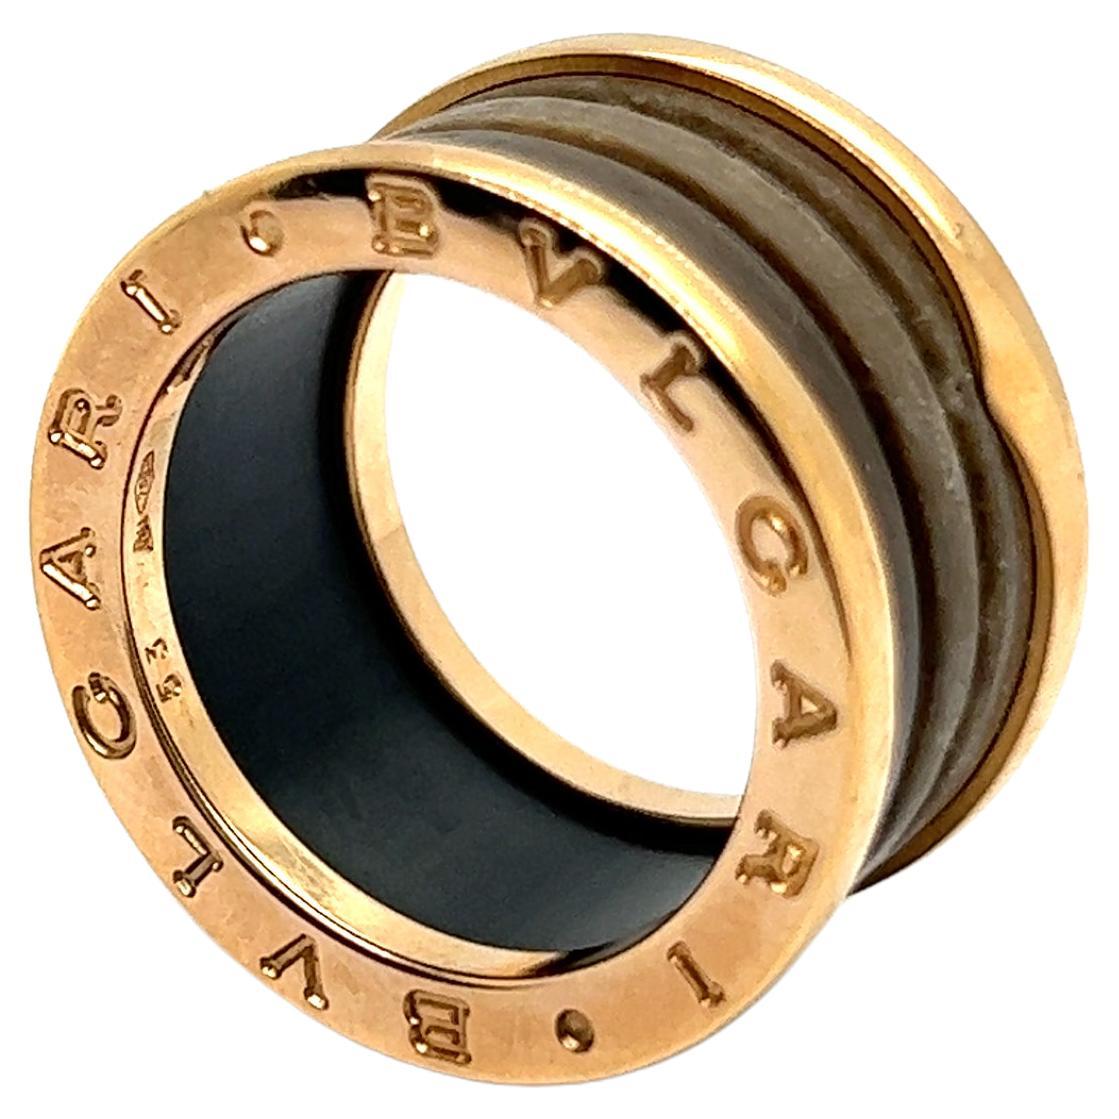 Bzero1 Ring with Agate by Bvlgari in 18 Karat Rose Gold